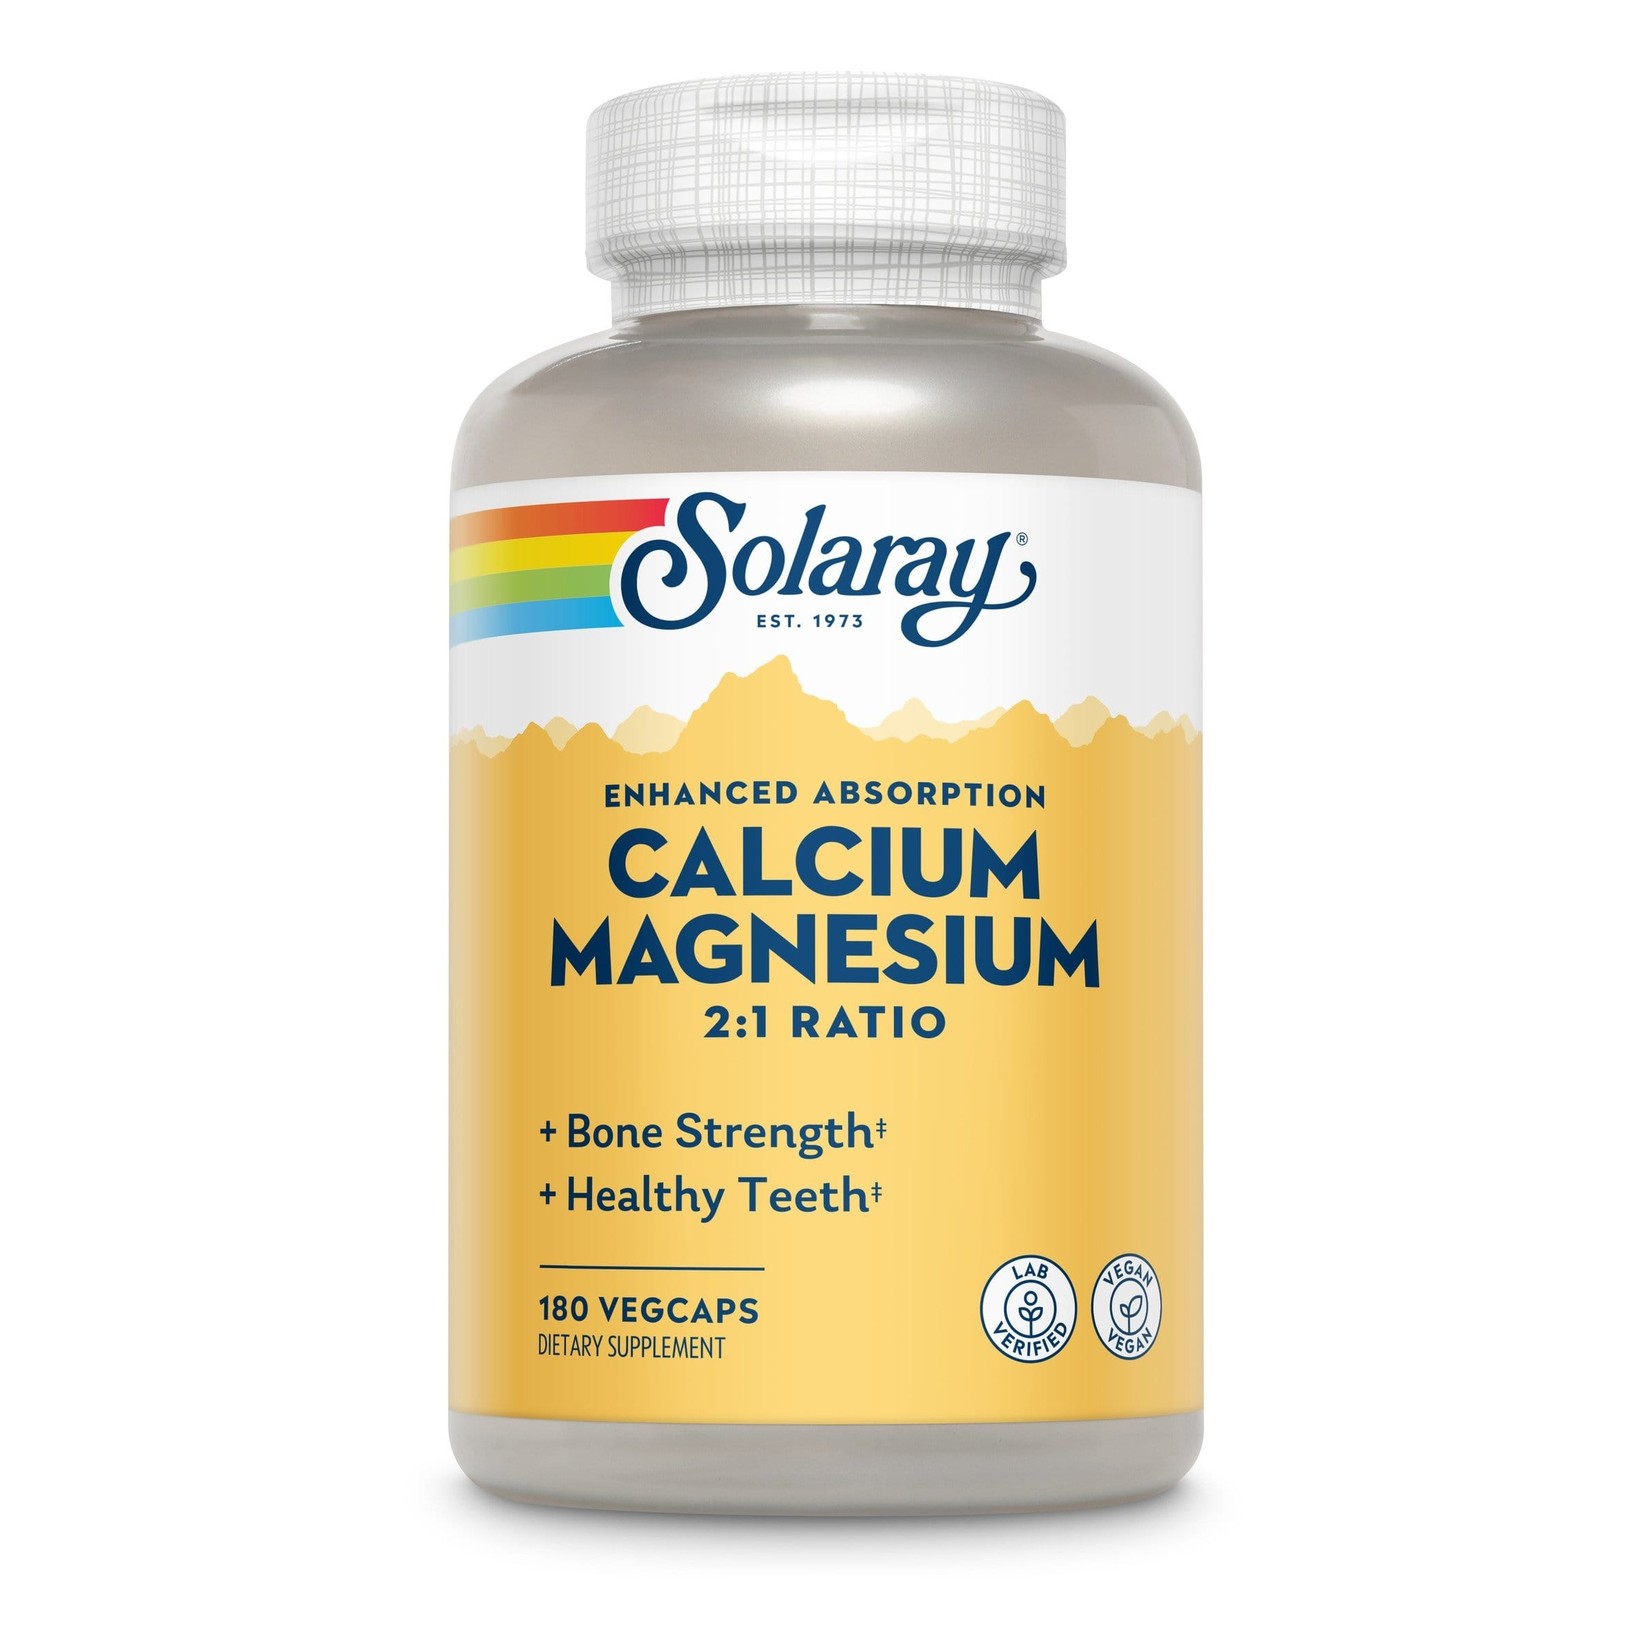 Solaray Solaray - Calcium and Magnesium - 180 count